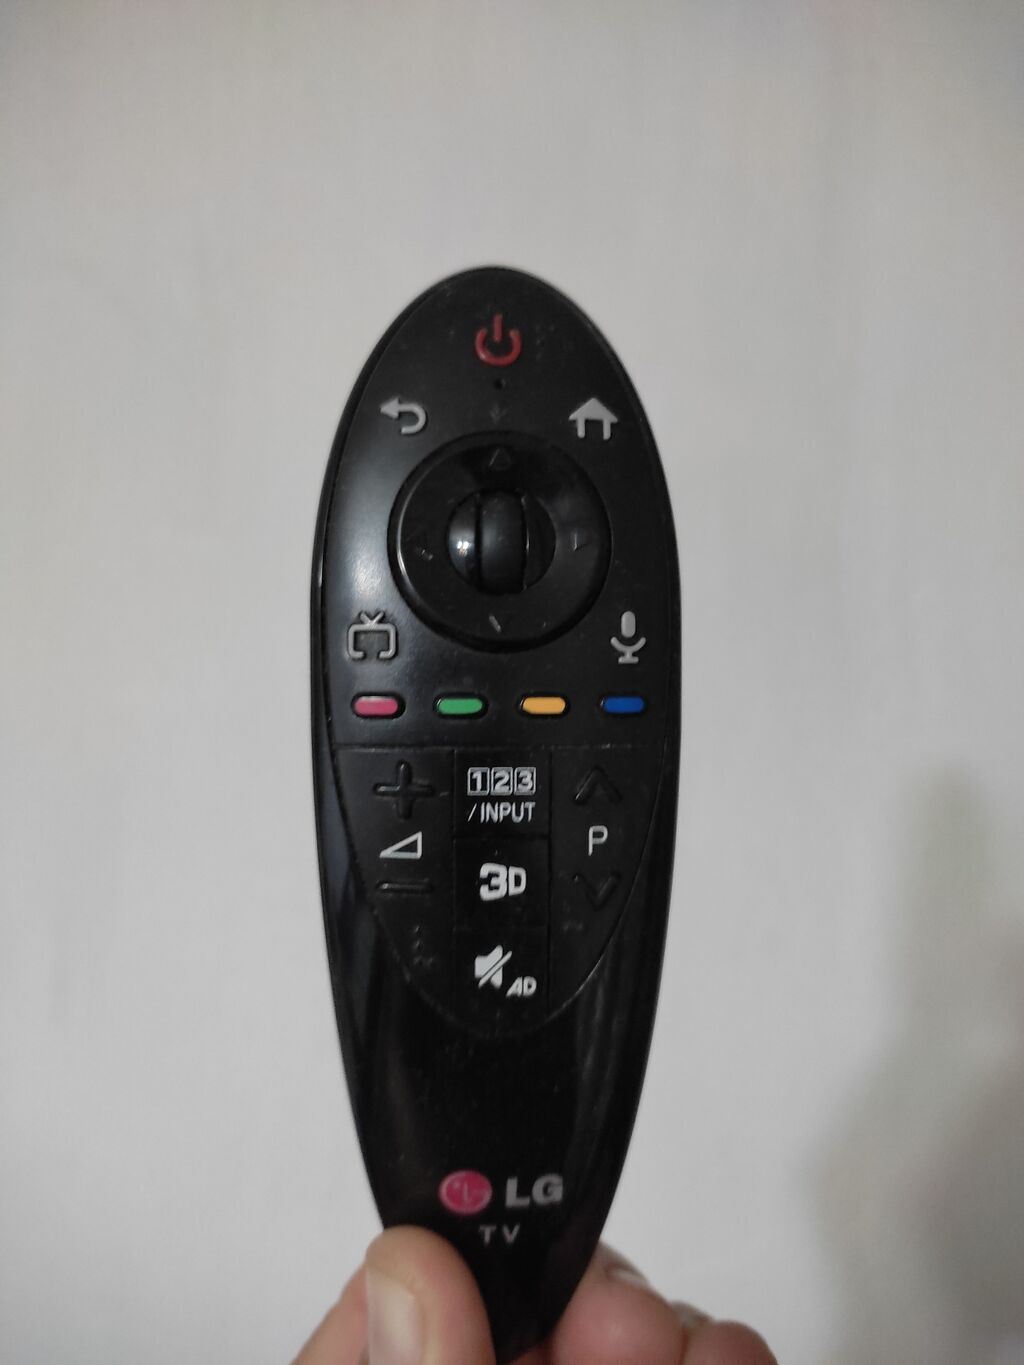 Указка для телевизора lg. Пульт указка для телевизора LG. Пульт указка для телевизора 56ub830v-ZB. Расположение кнопок на пульте указке LG. ТВ приставка с пультом указкой.